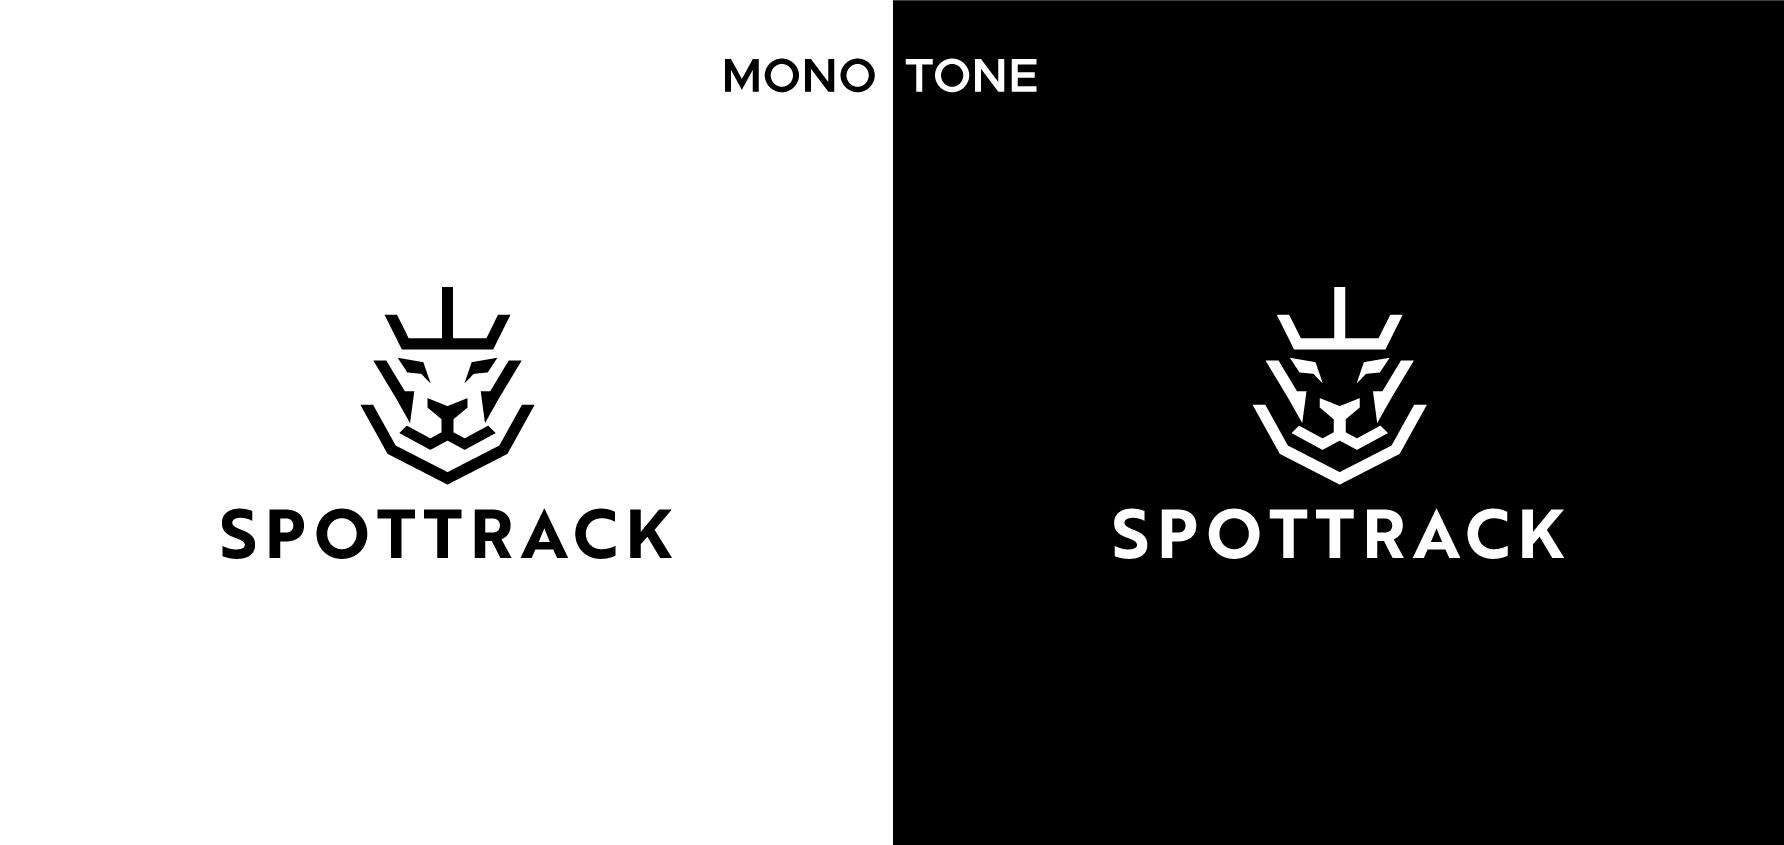 Spottrack, Monotone, logo